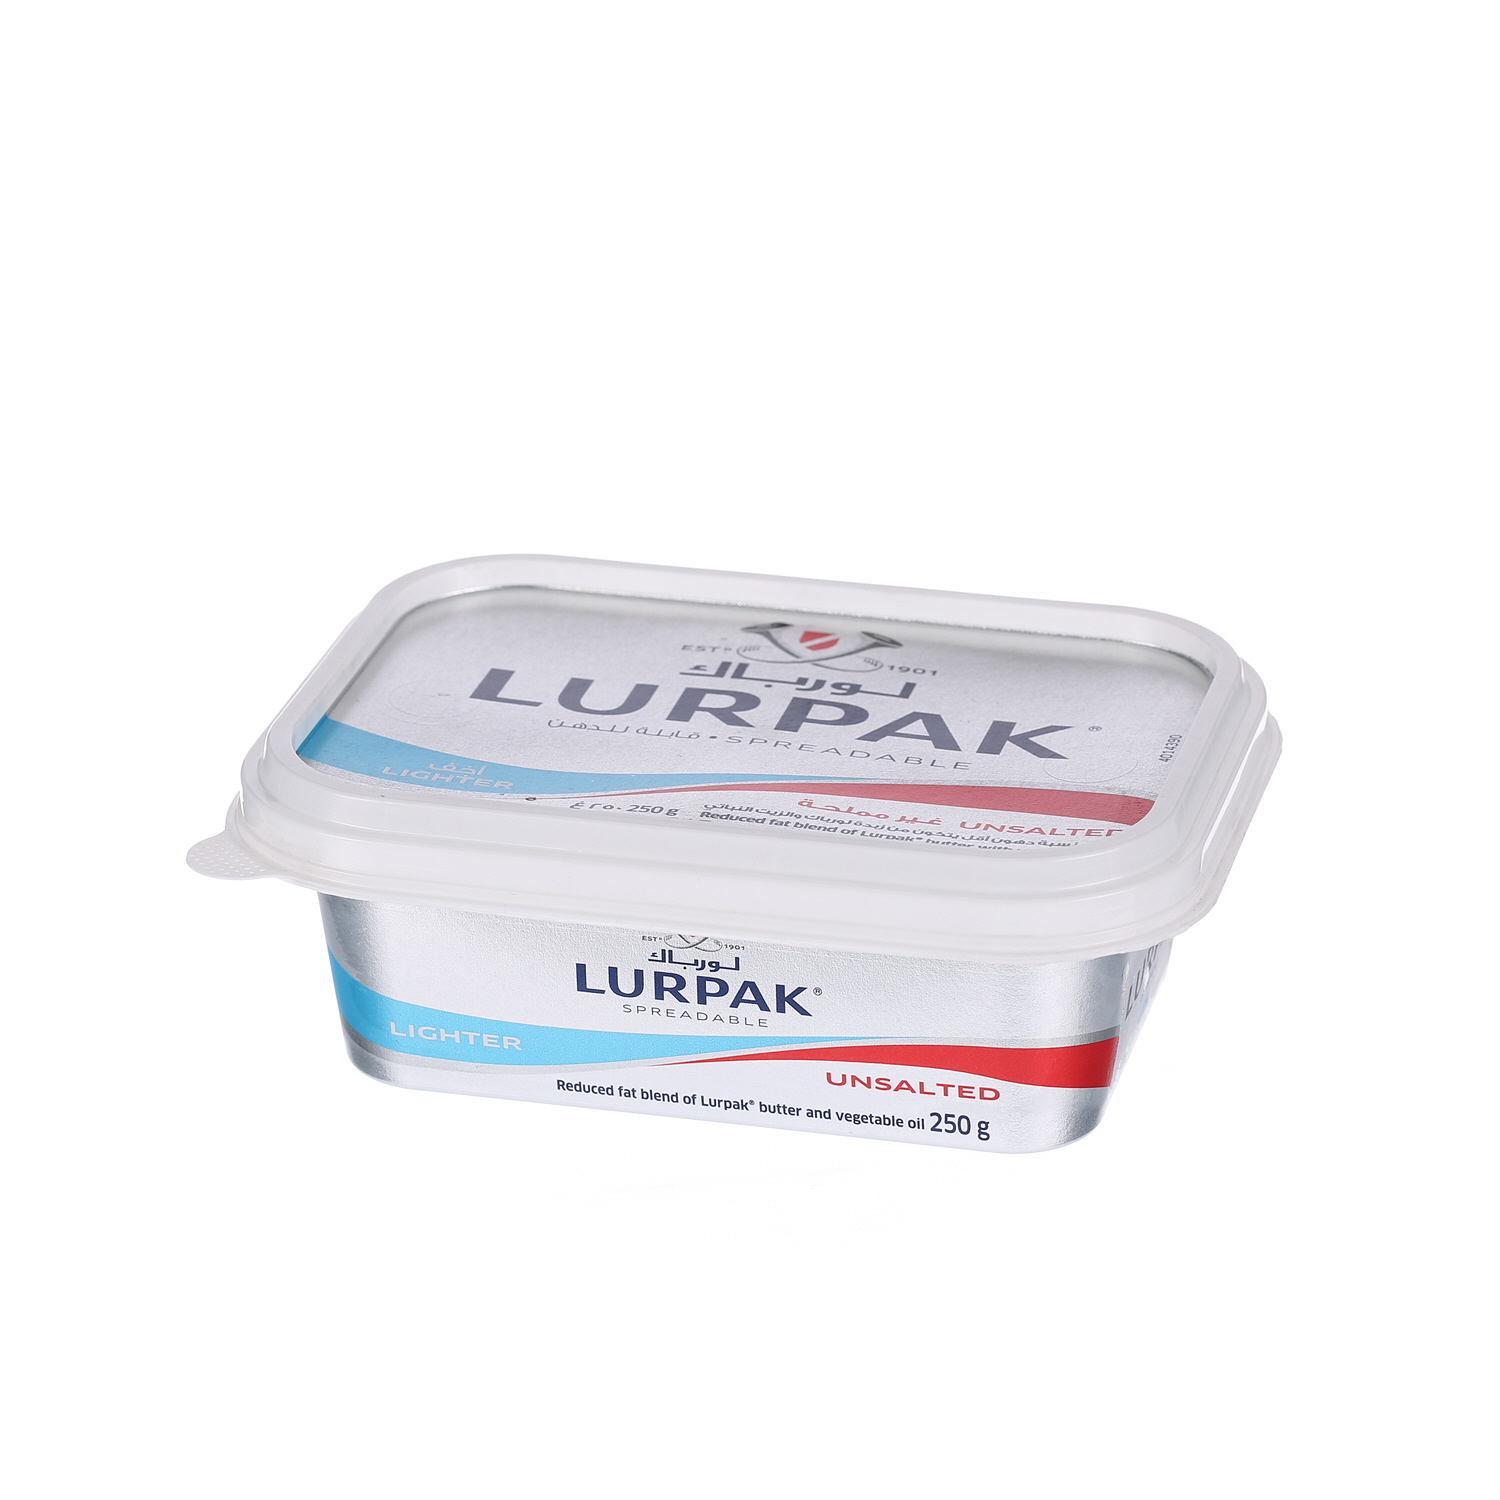 Lurpak Butter Spreadable Light Unsalted 250gm